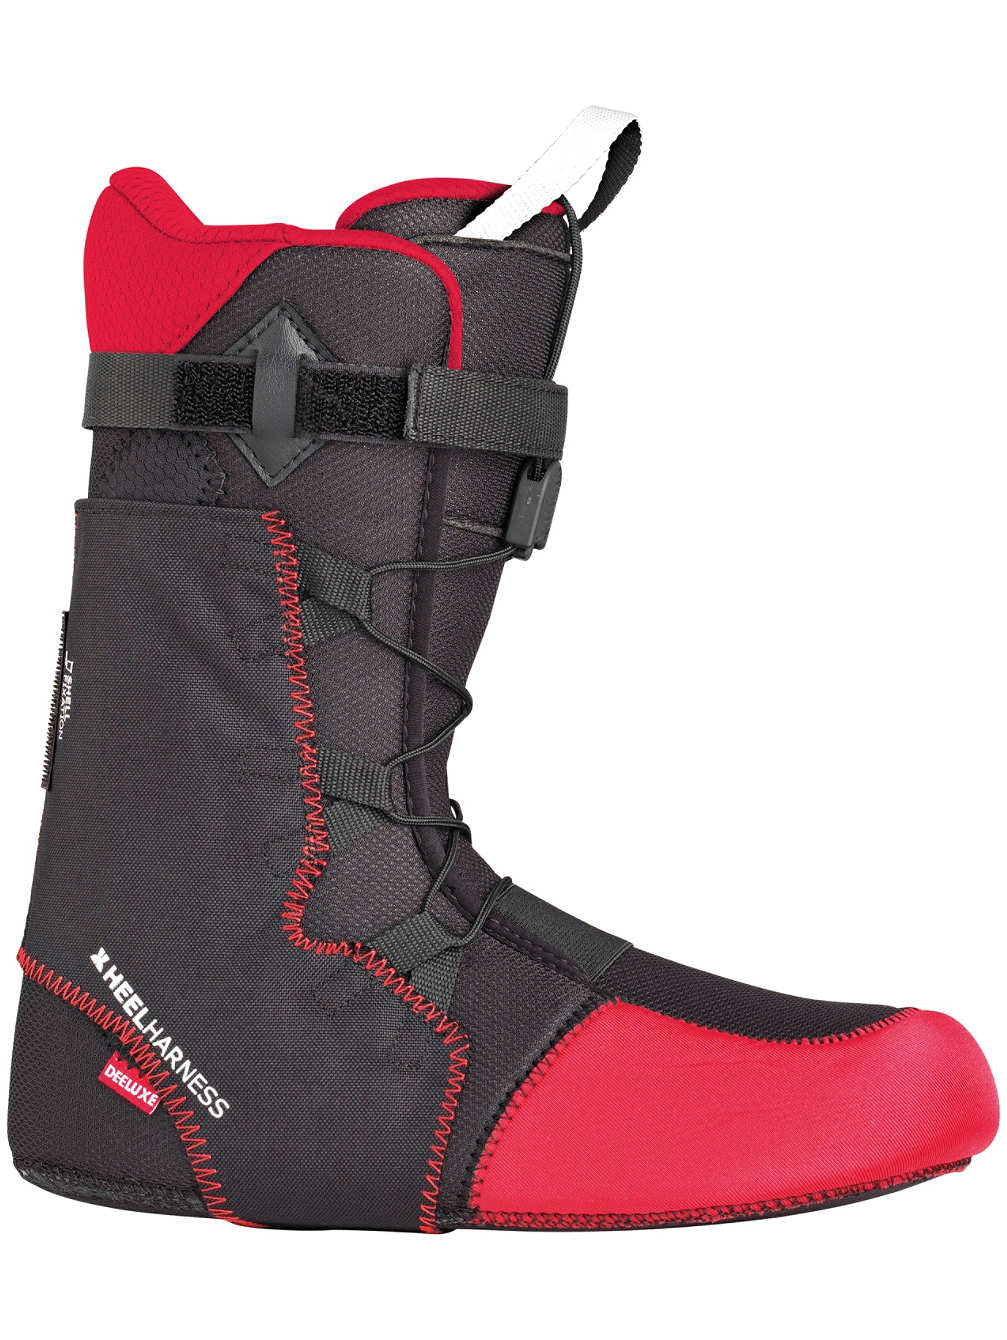 Wkładki do butów snowboardowych Thermo Flex Deeluxe Premium Liner, rozmiar 44/29cm